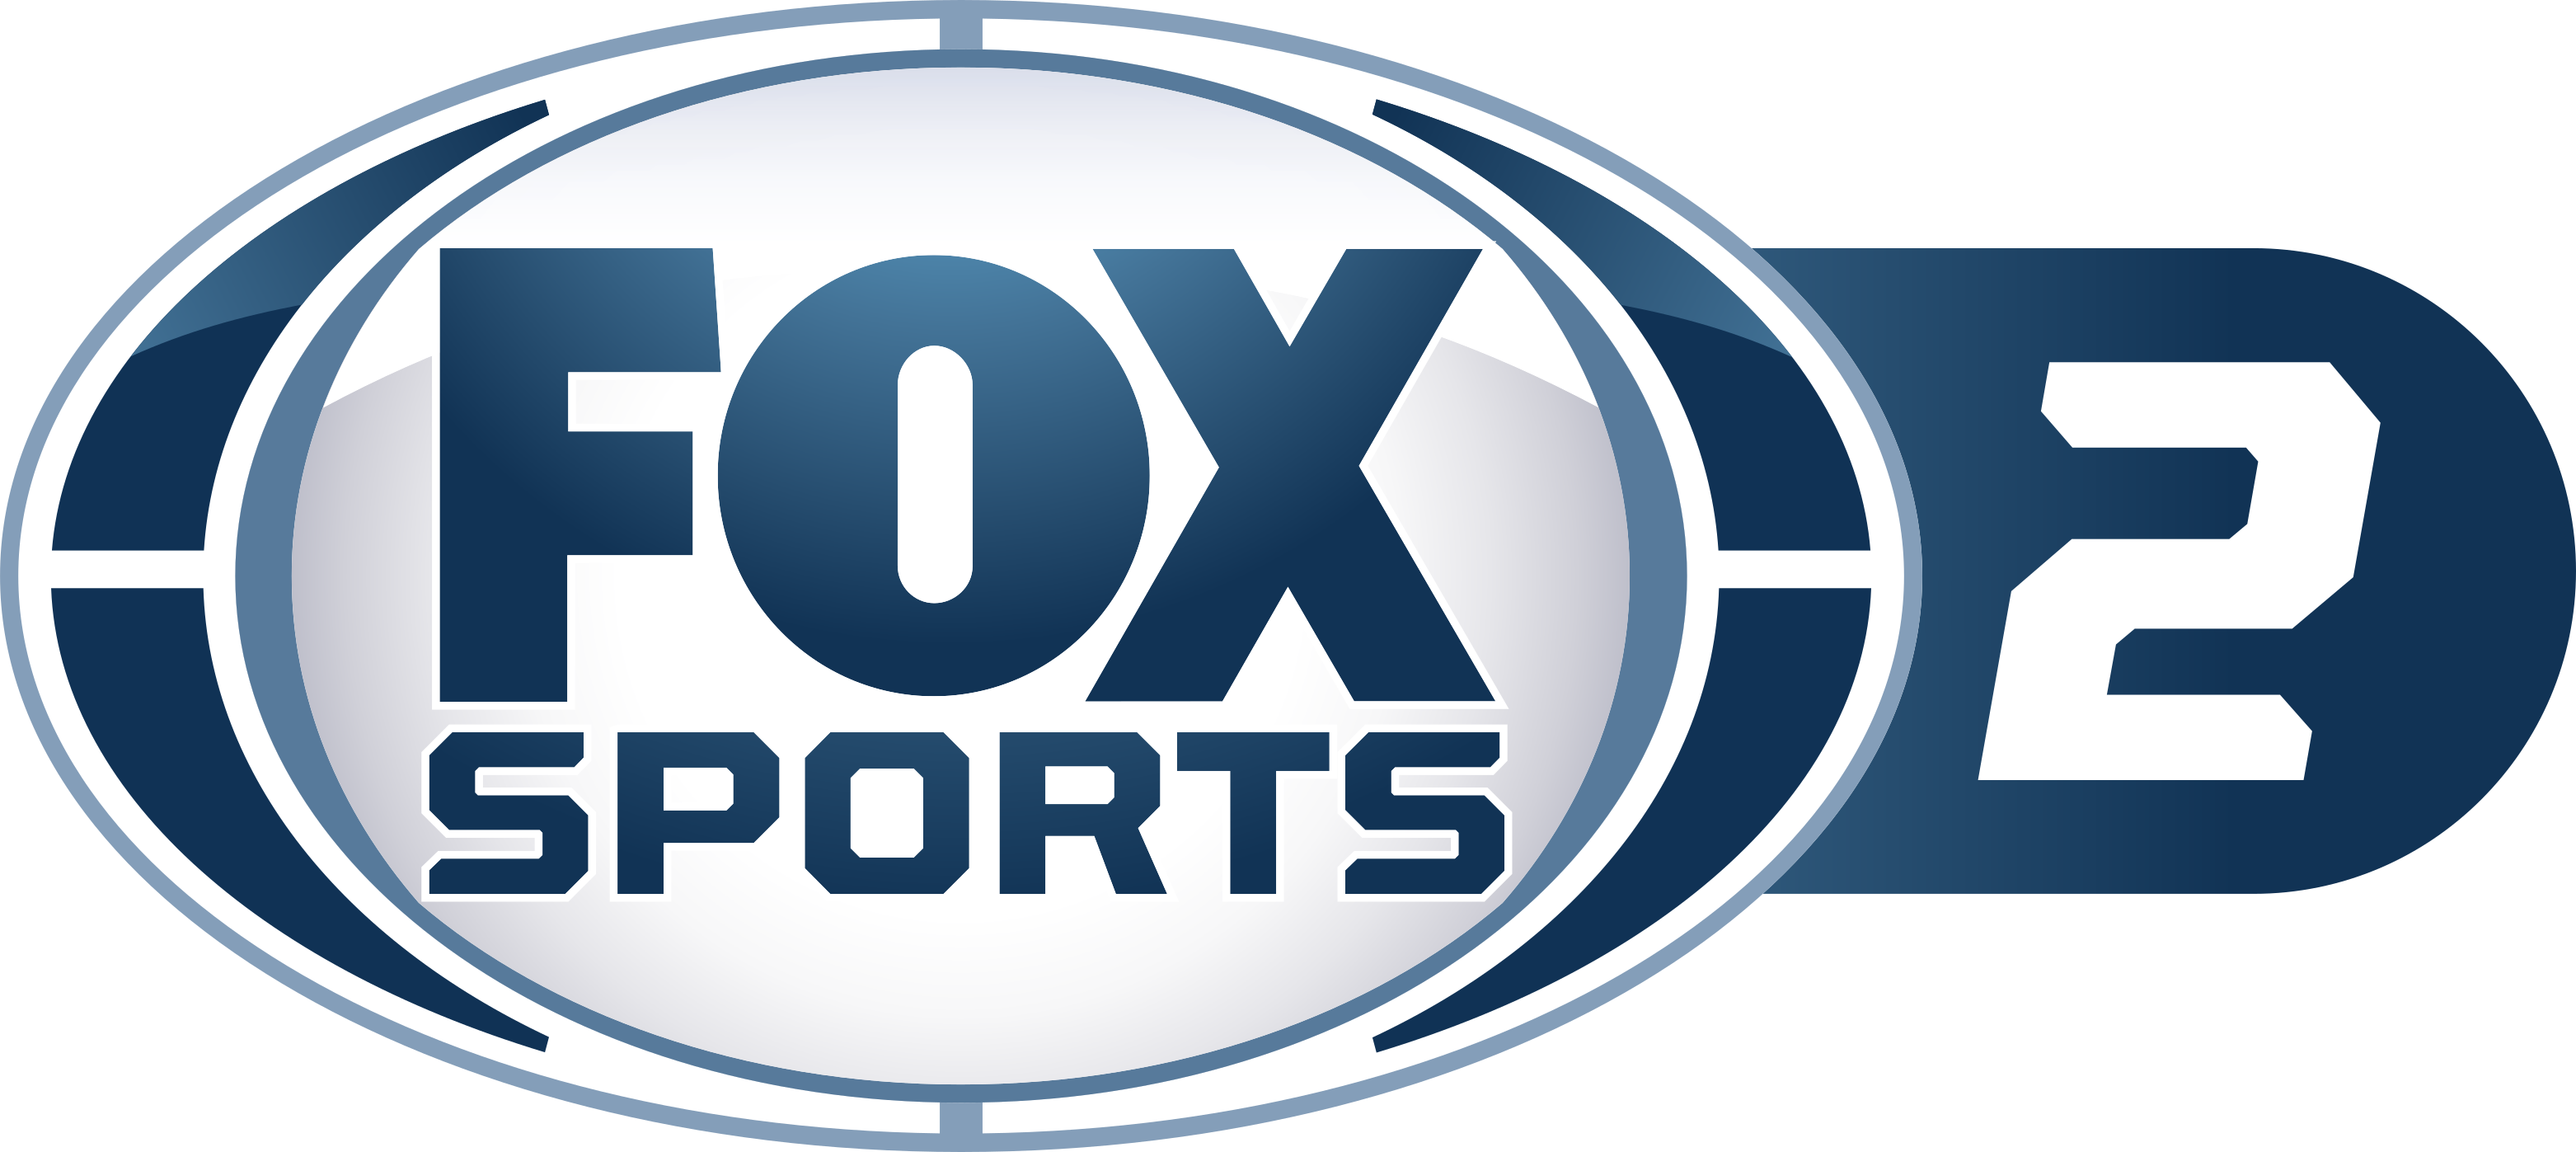 Imagem do Fox Sports 2